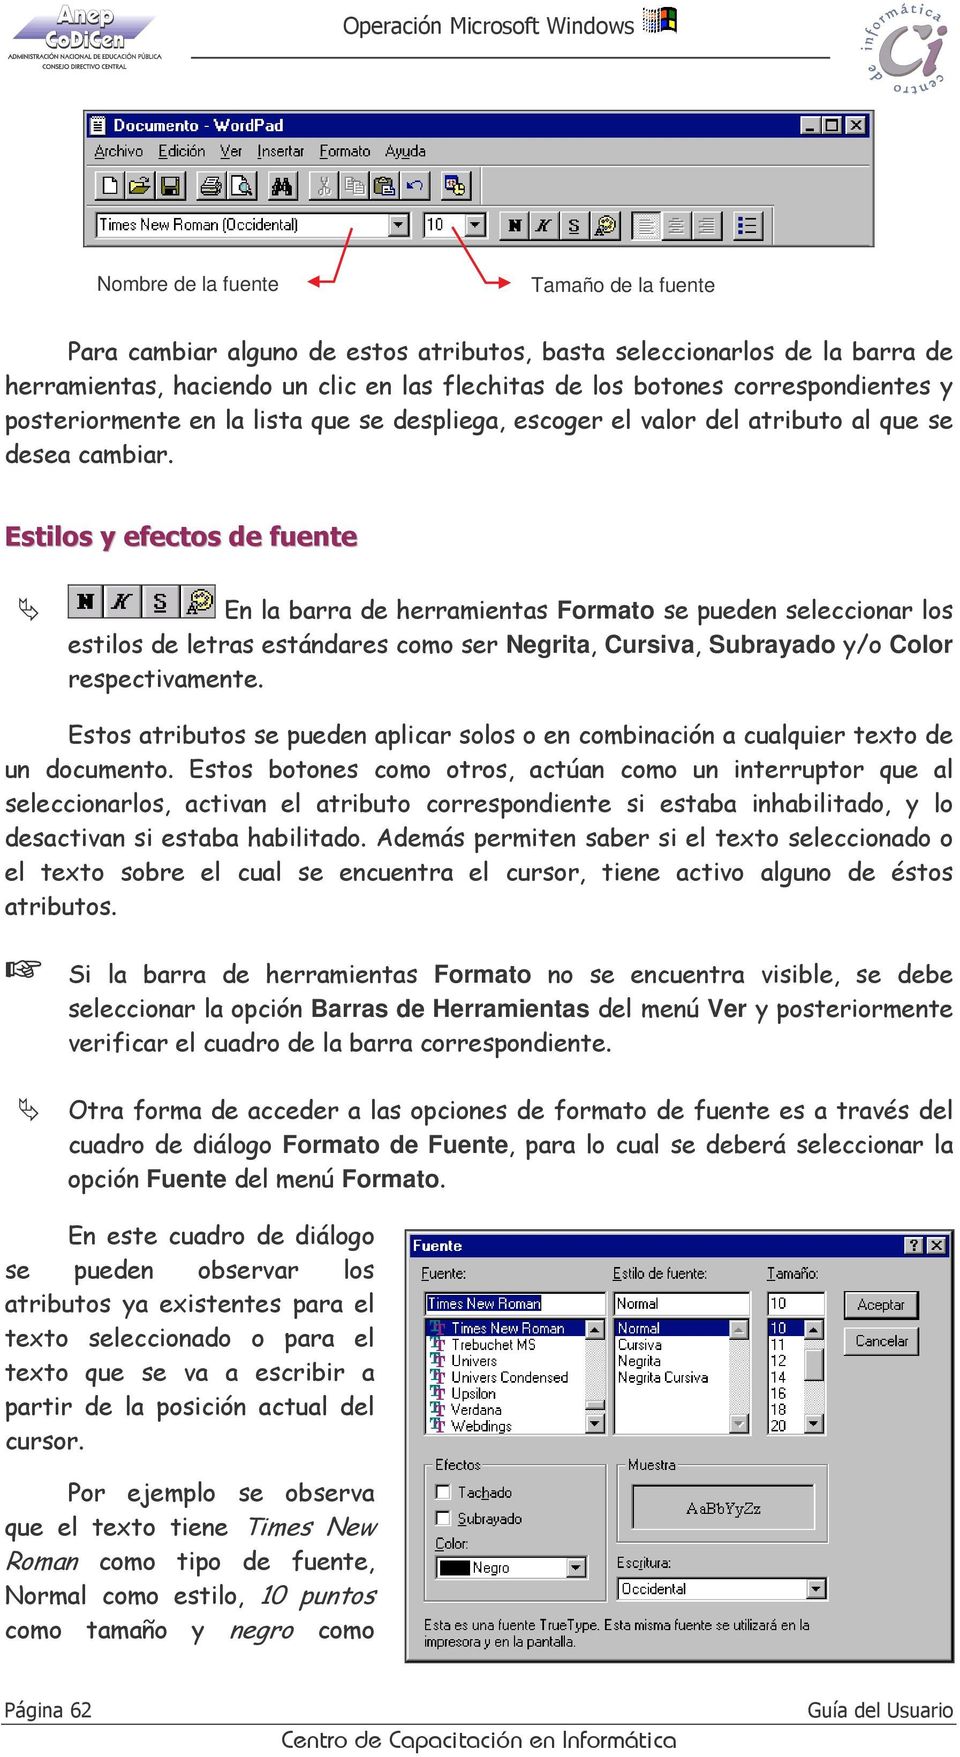 Estilos y efectos de fuente En la barra de herramientas Formato se pueden seleccionar los estilos de letras estándares como ser Negrita, Cursiva, Subrayado y/o Color respectivamente.